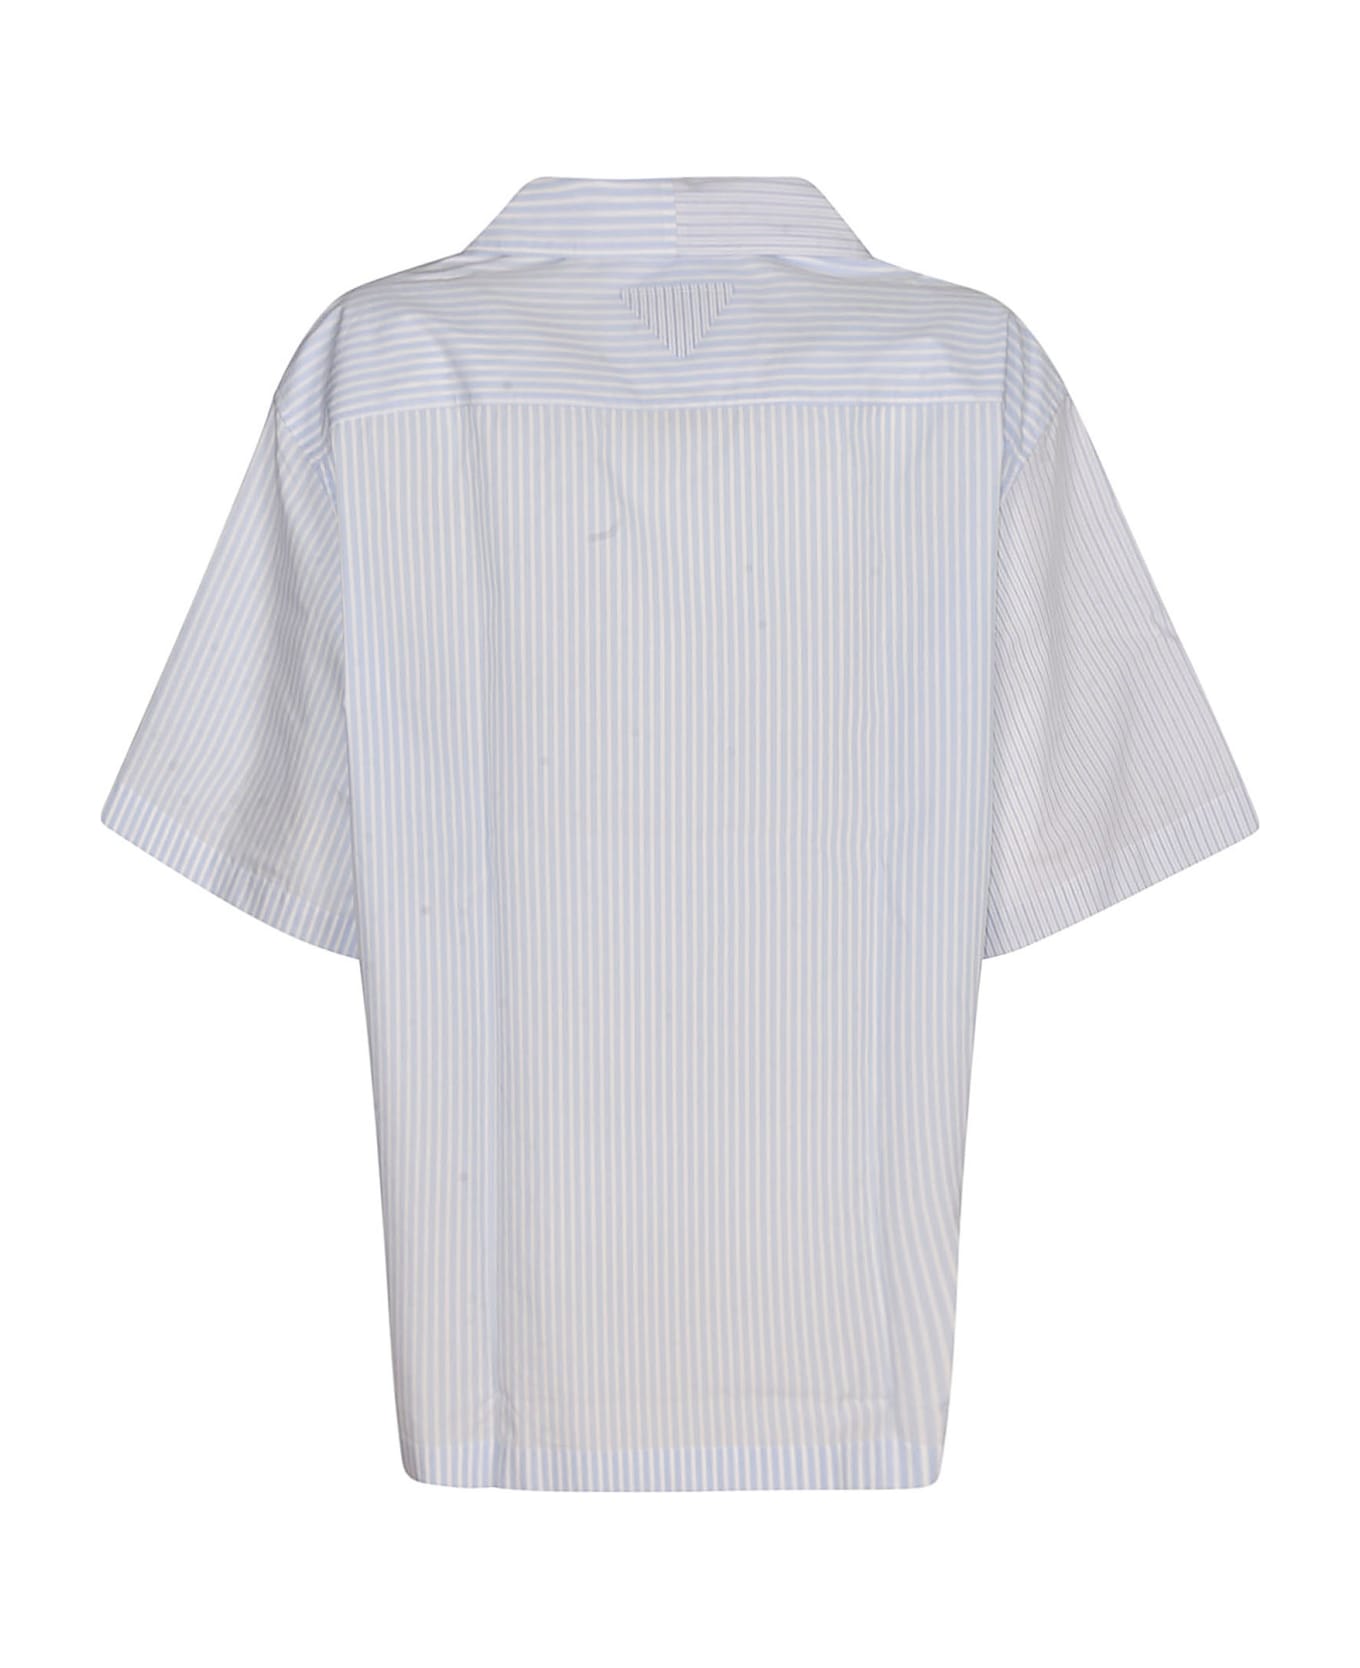 Prada Striped Short-sleeved Button Up Shirt - White/Sky Blue